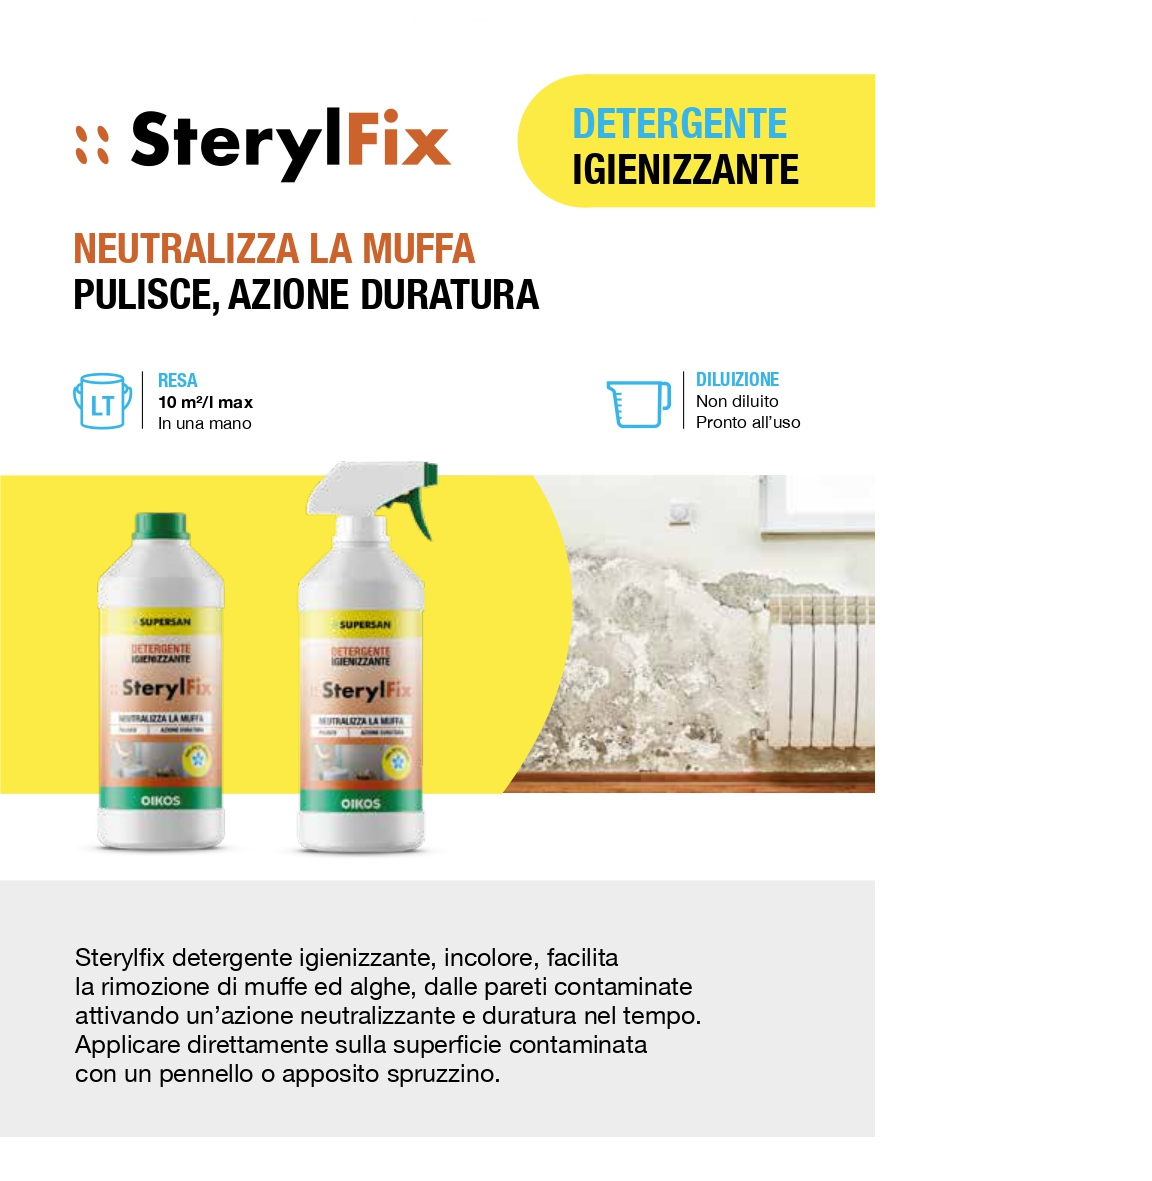 Sterylfix detergente igienizzante neutralizzante